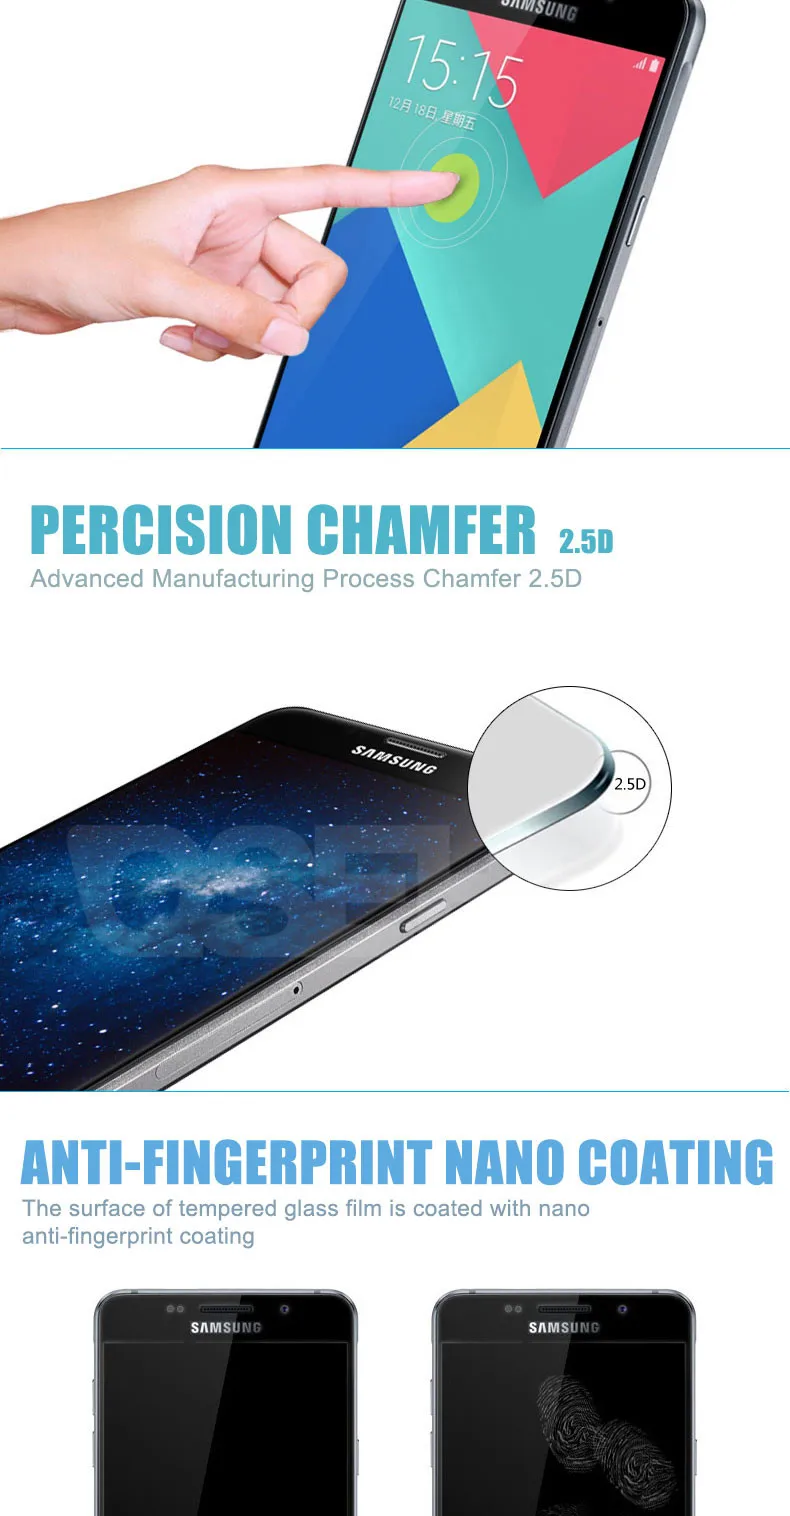 9D защитное стекло на Samsung Galaxy A3 A5 A7 J3 J5 J7 S7 полное покрытие закаленное защитное стекло для экрана